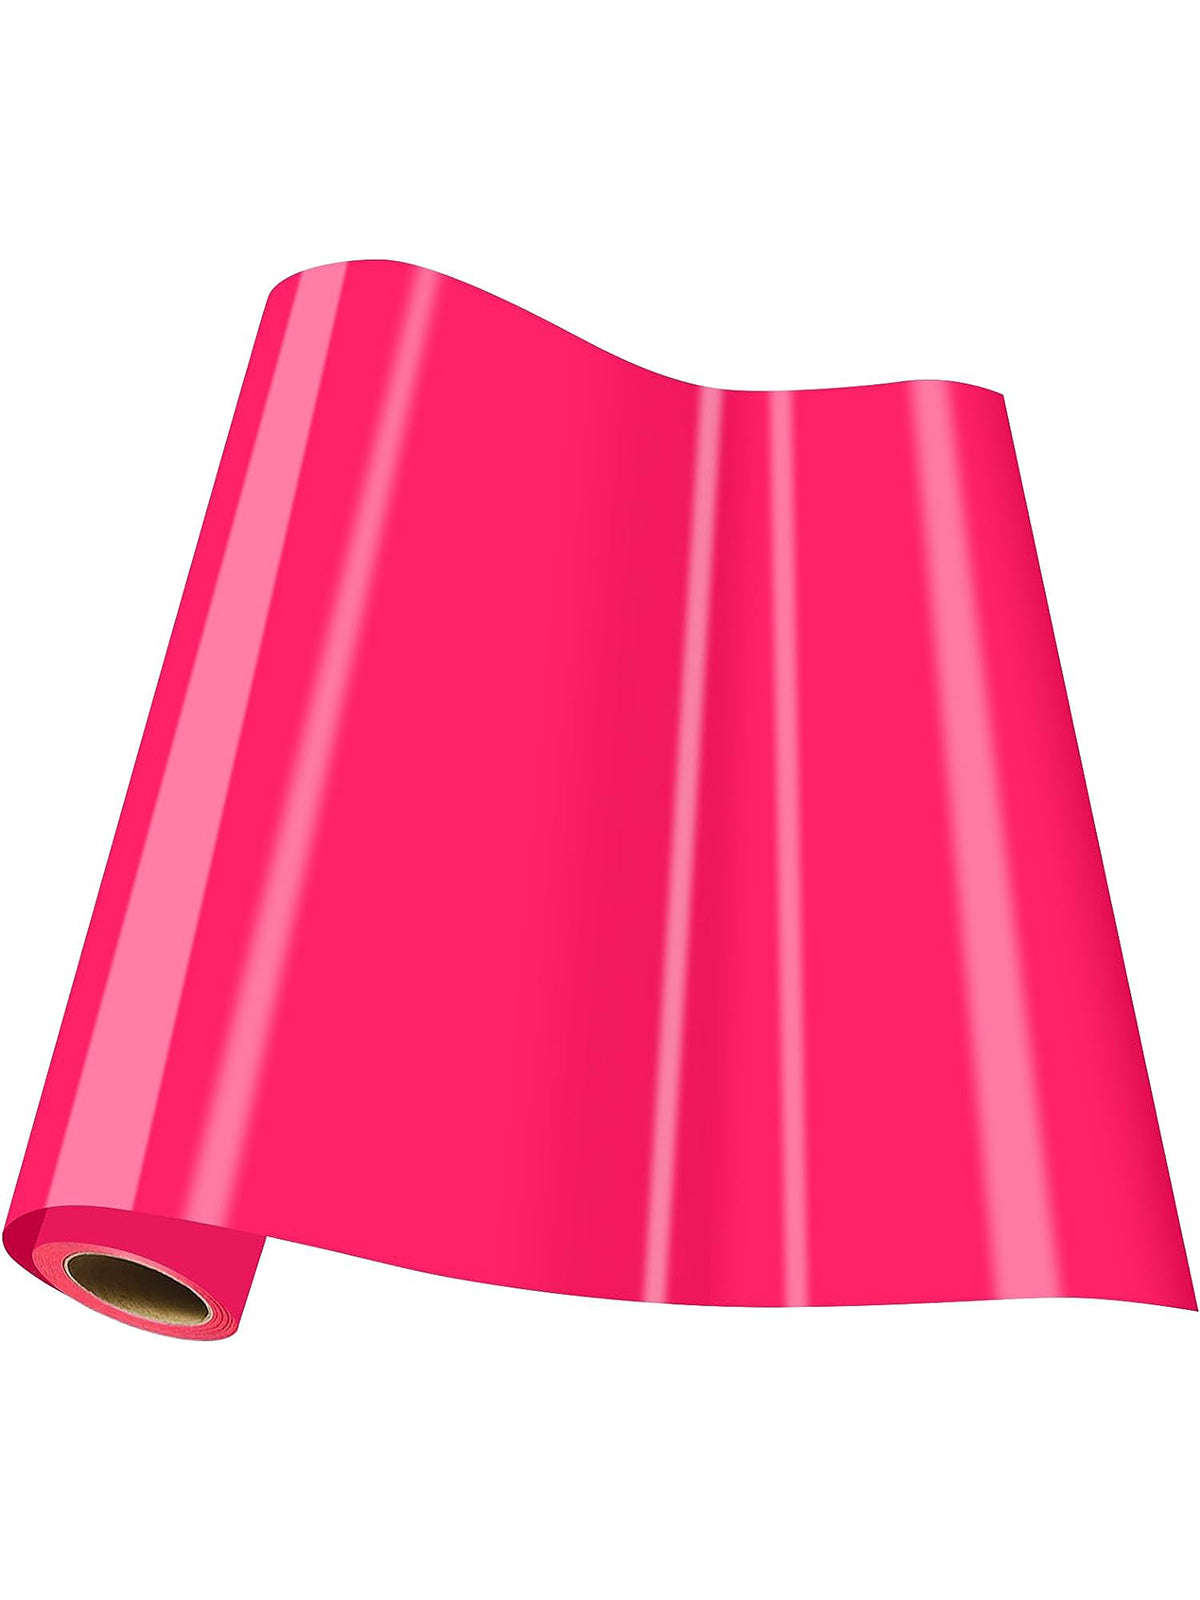 Neon Pink PARART 3D Puff Heat Transfer Vinyl (HTV)